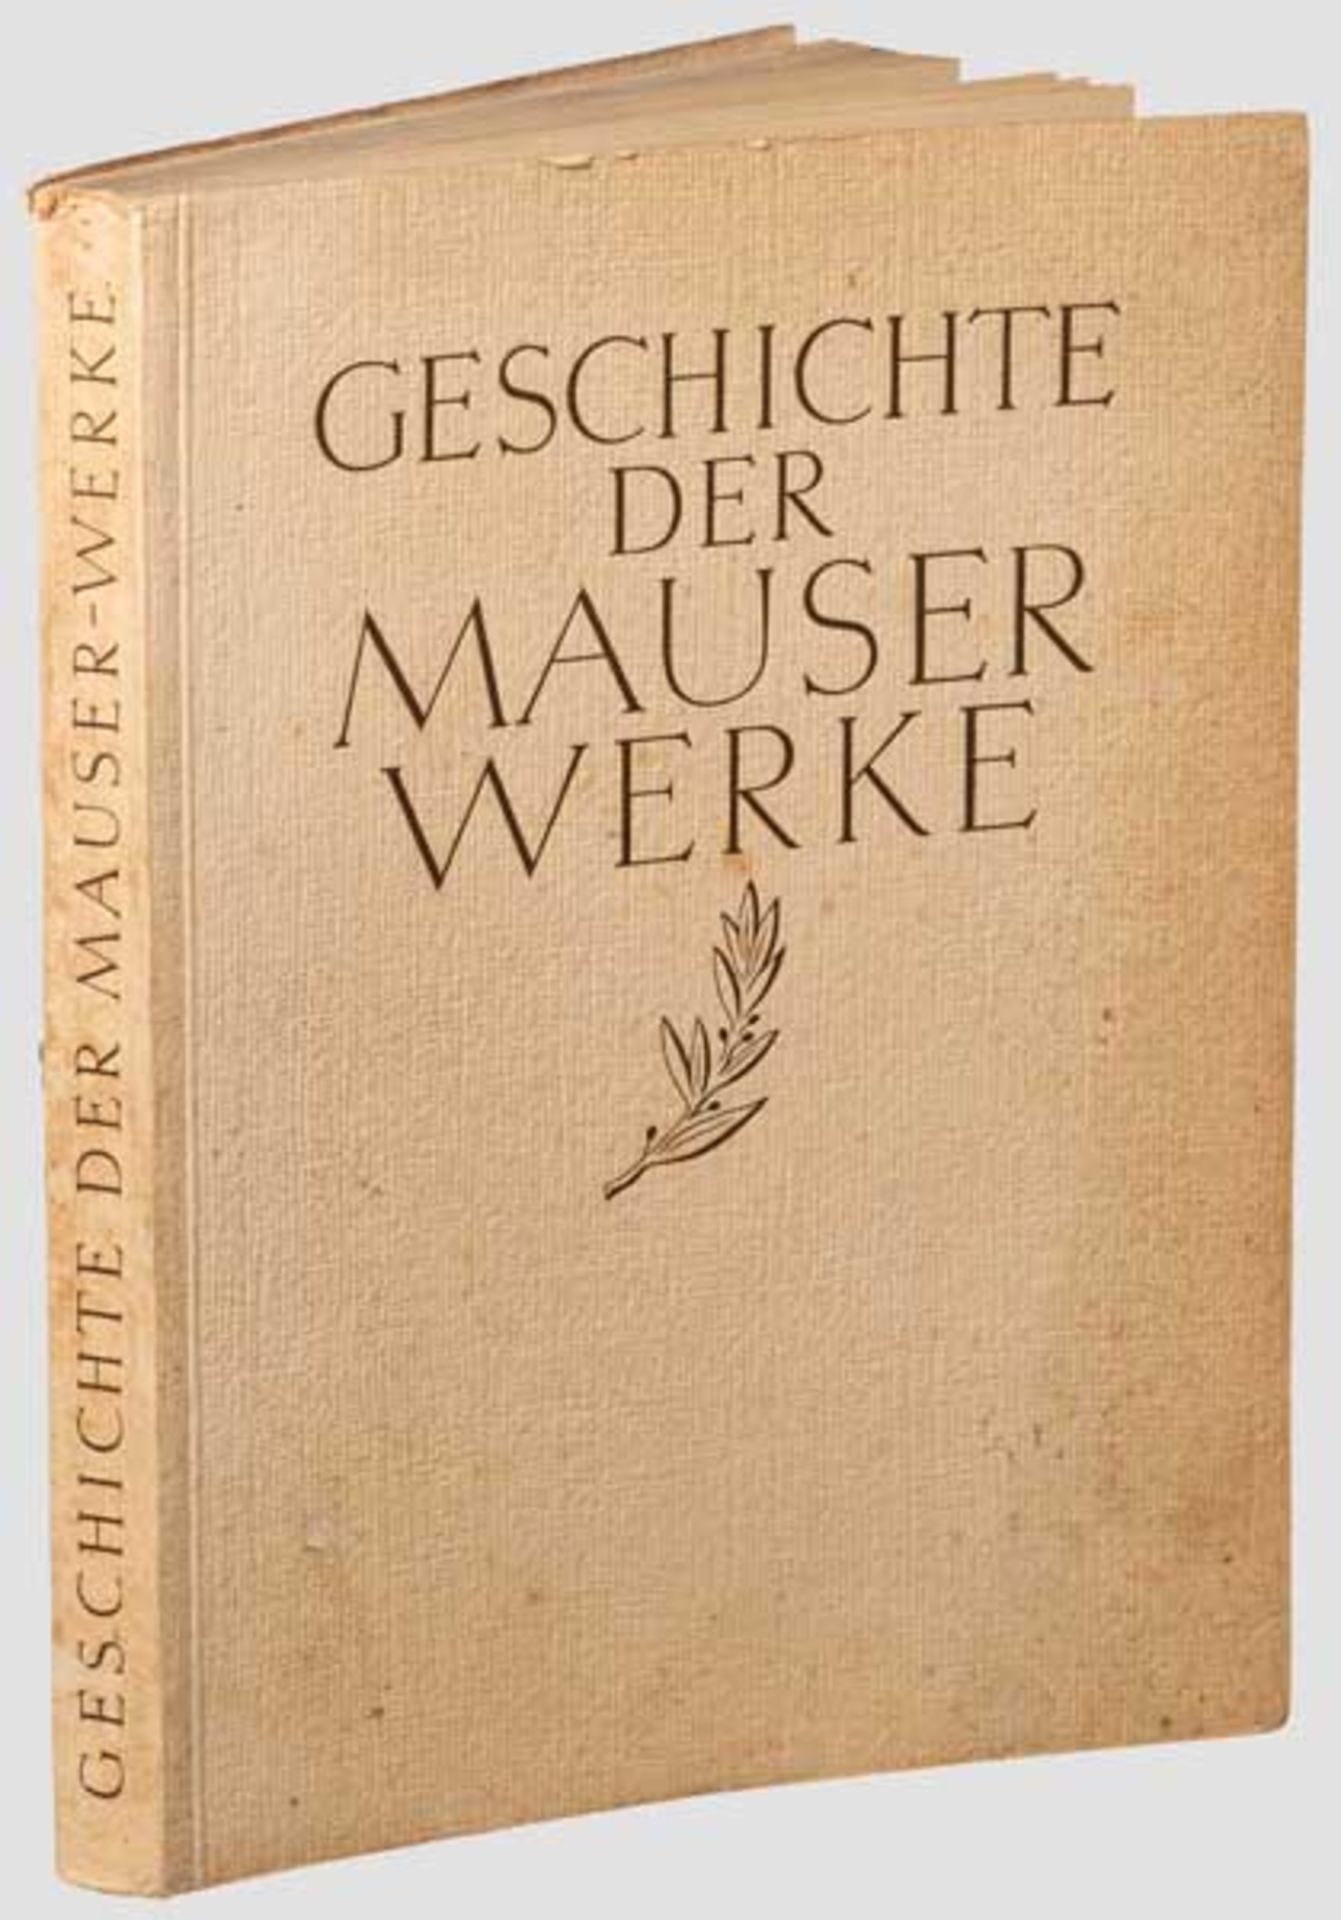 Festschrift "Geschichte der Mauser-Werke" Herausgegeben im Oktober 1938 aus Anlass des 125-